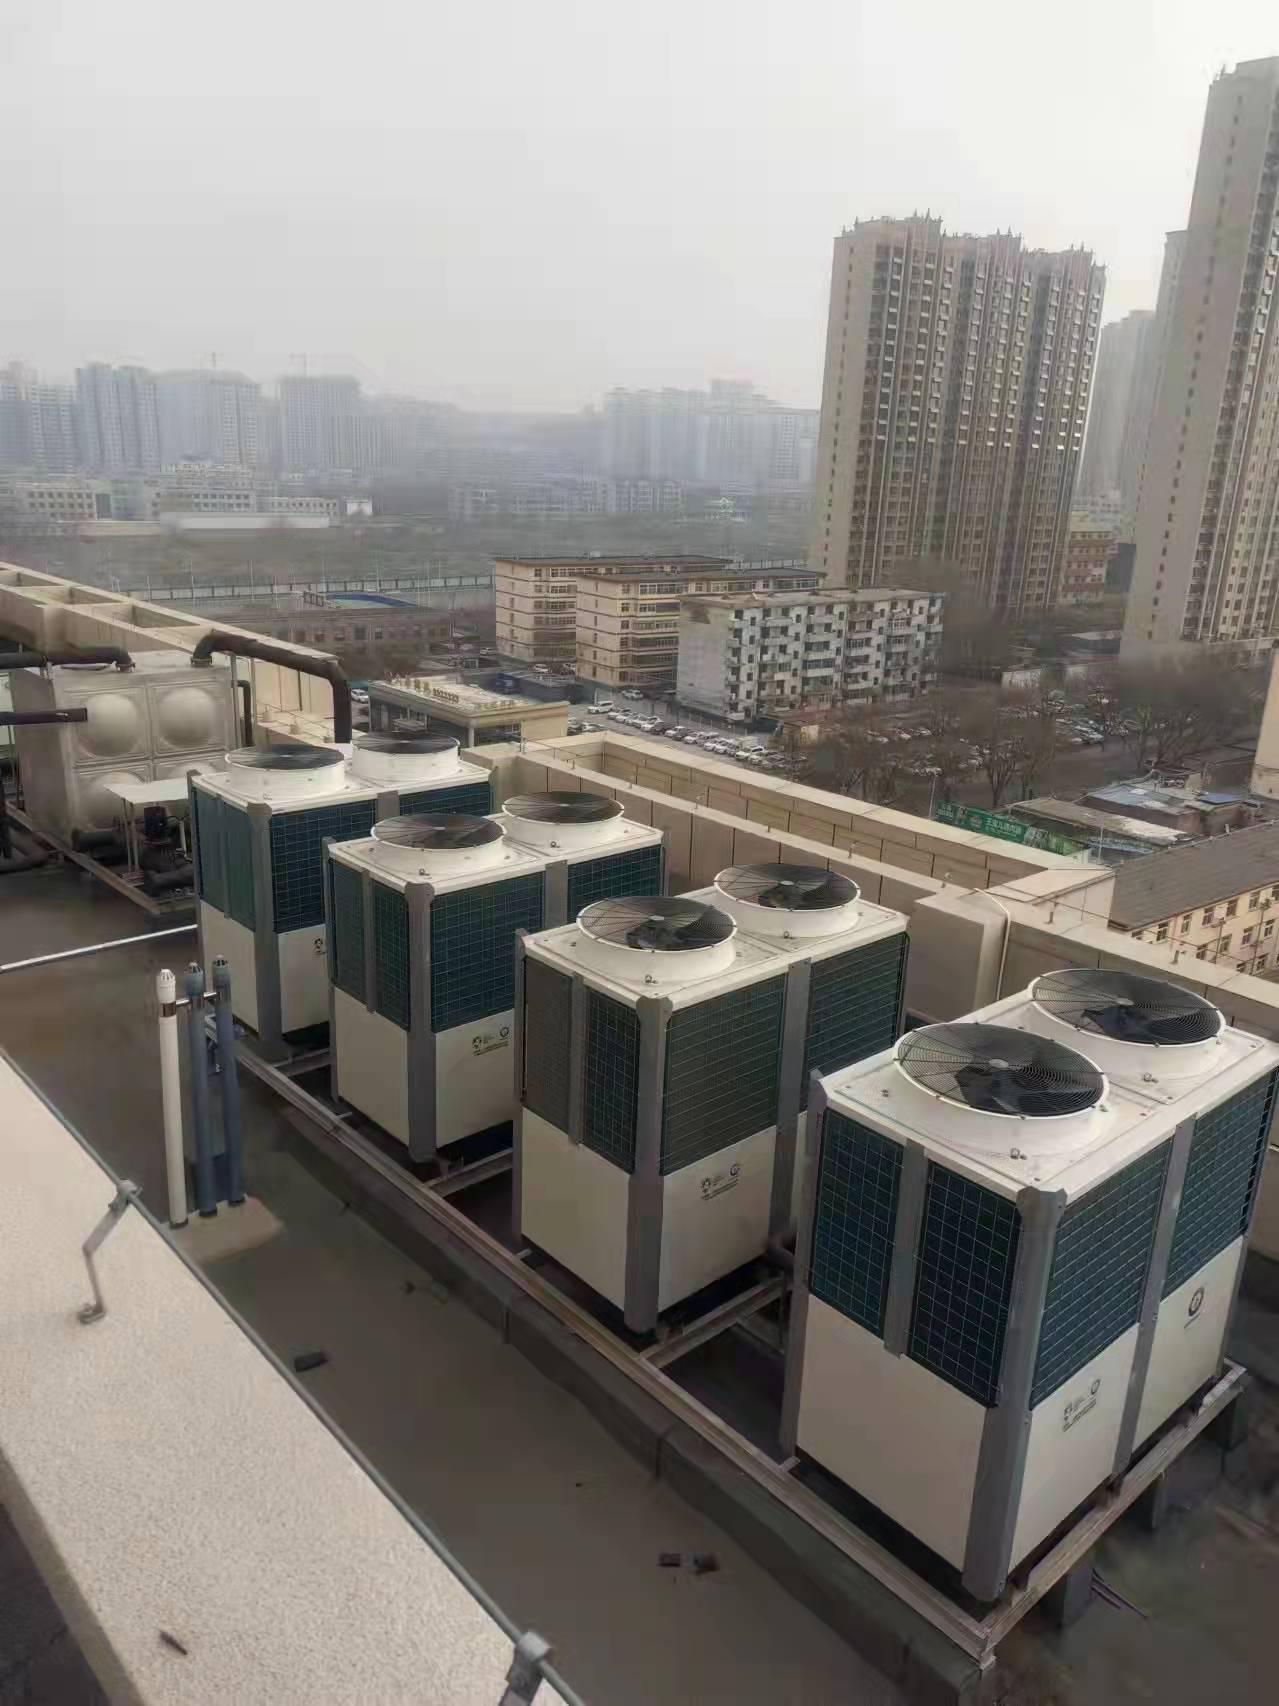 山西省晋中市榆次区尚客优品旅馆10000㎡冷暖项目